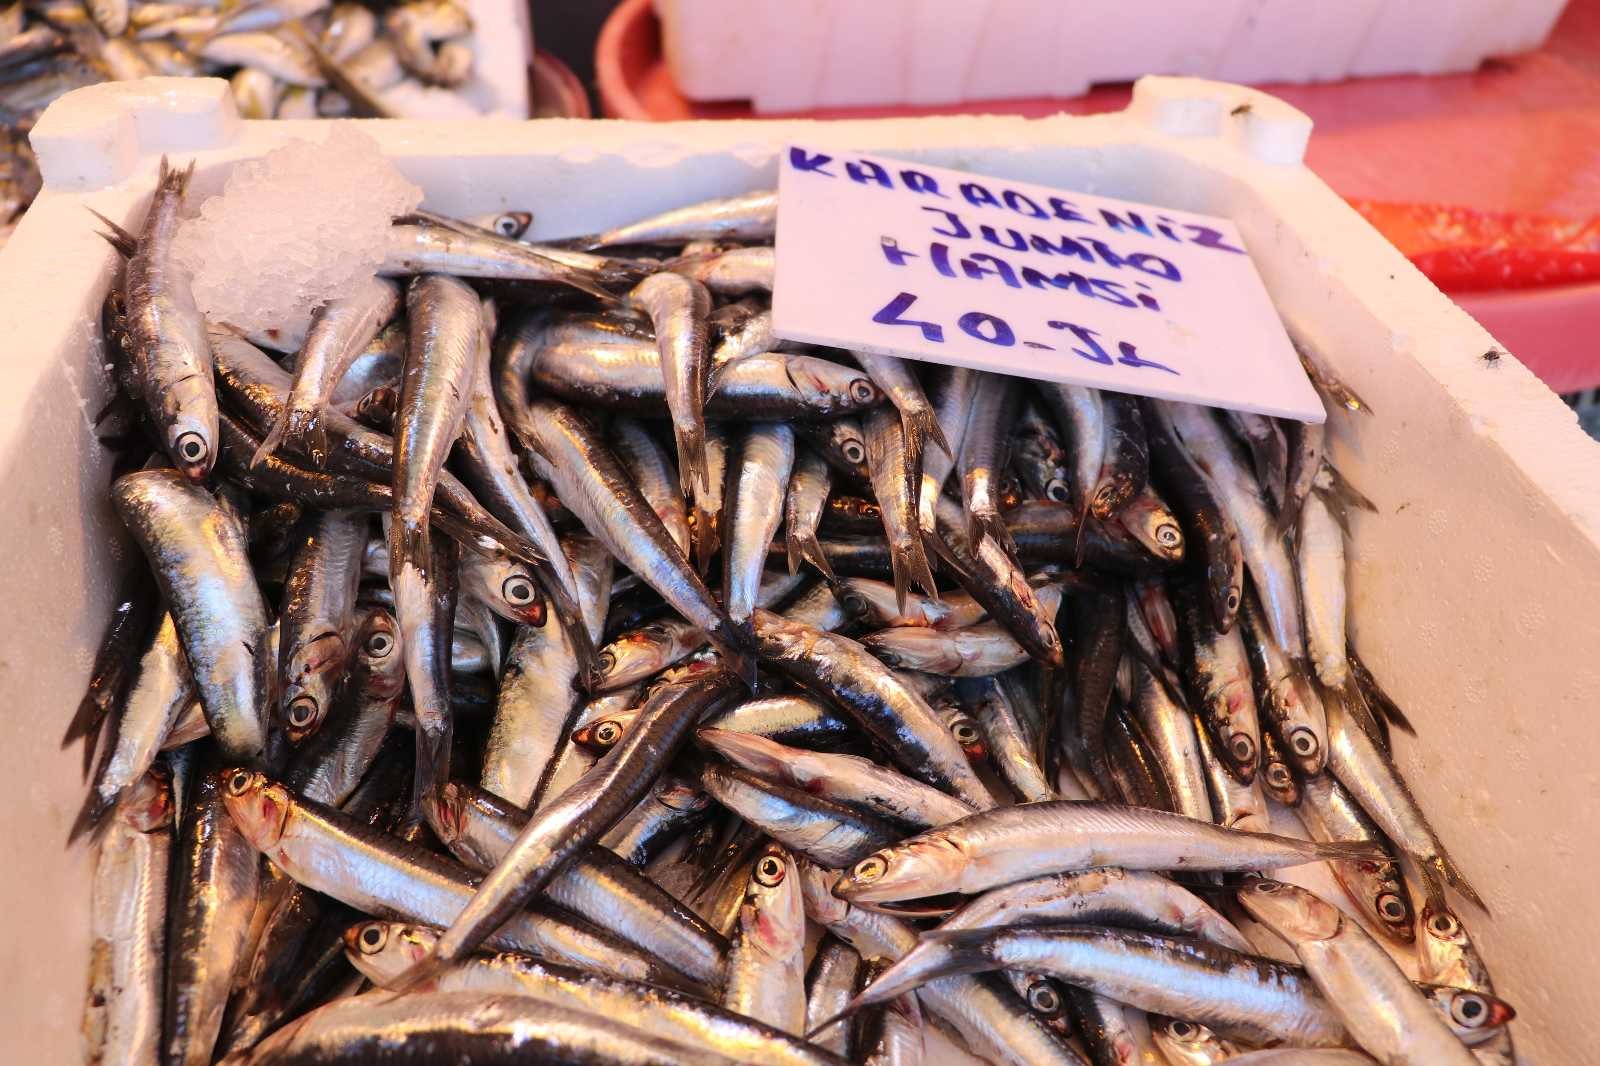 Gaziantepli balıkçılar kebap kültüründen şikayetçi #gaziantep